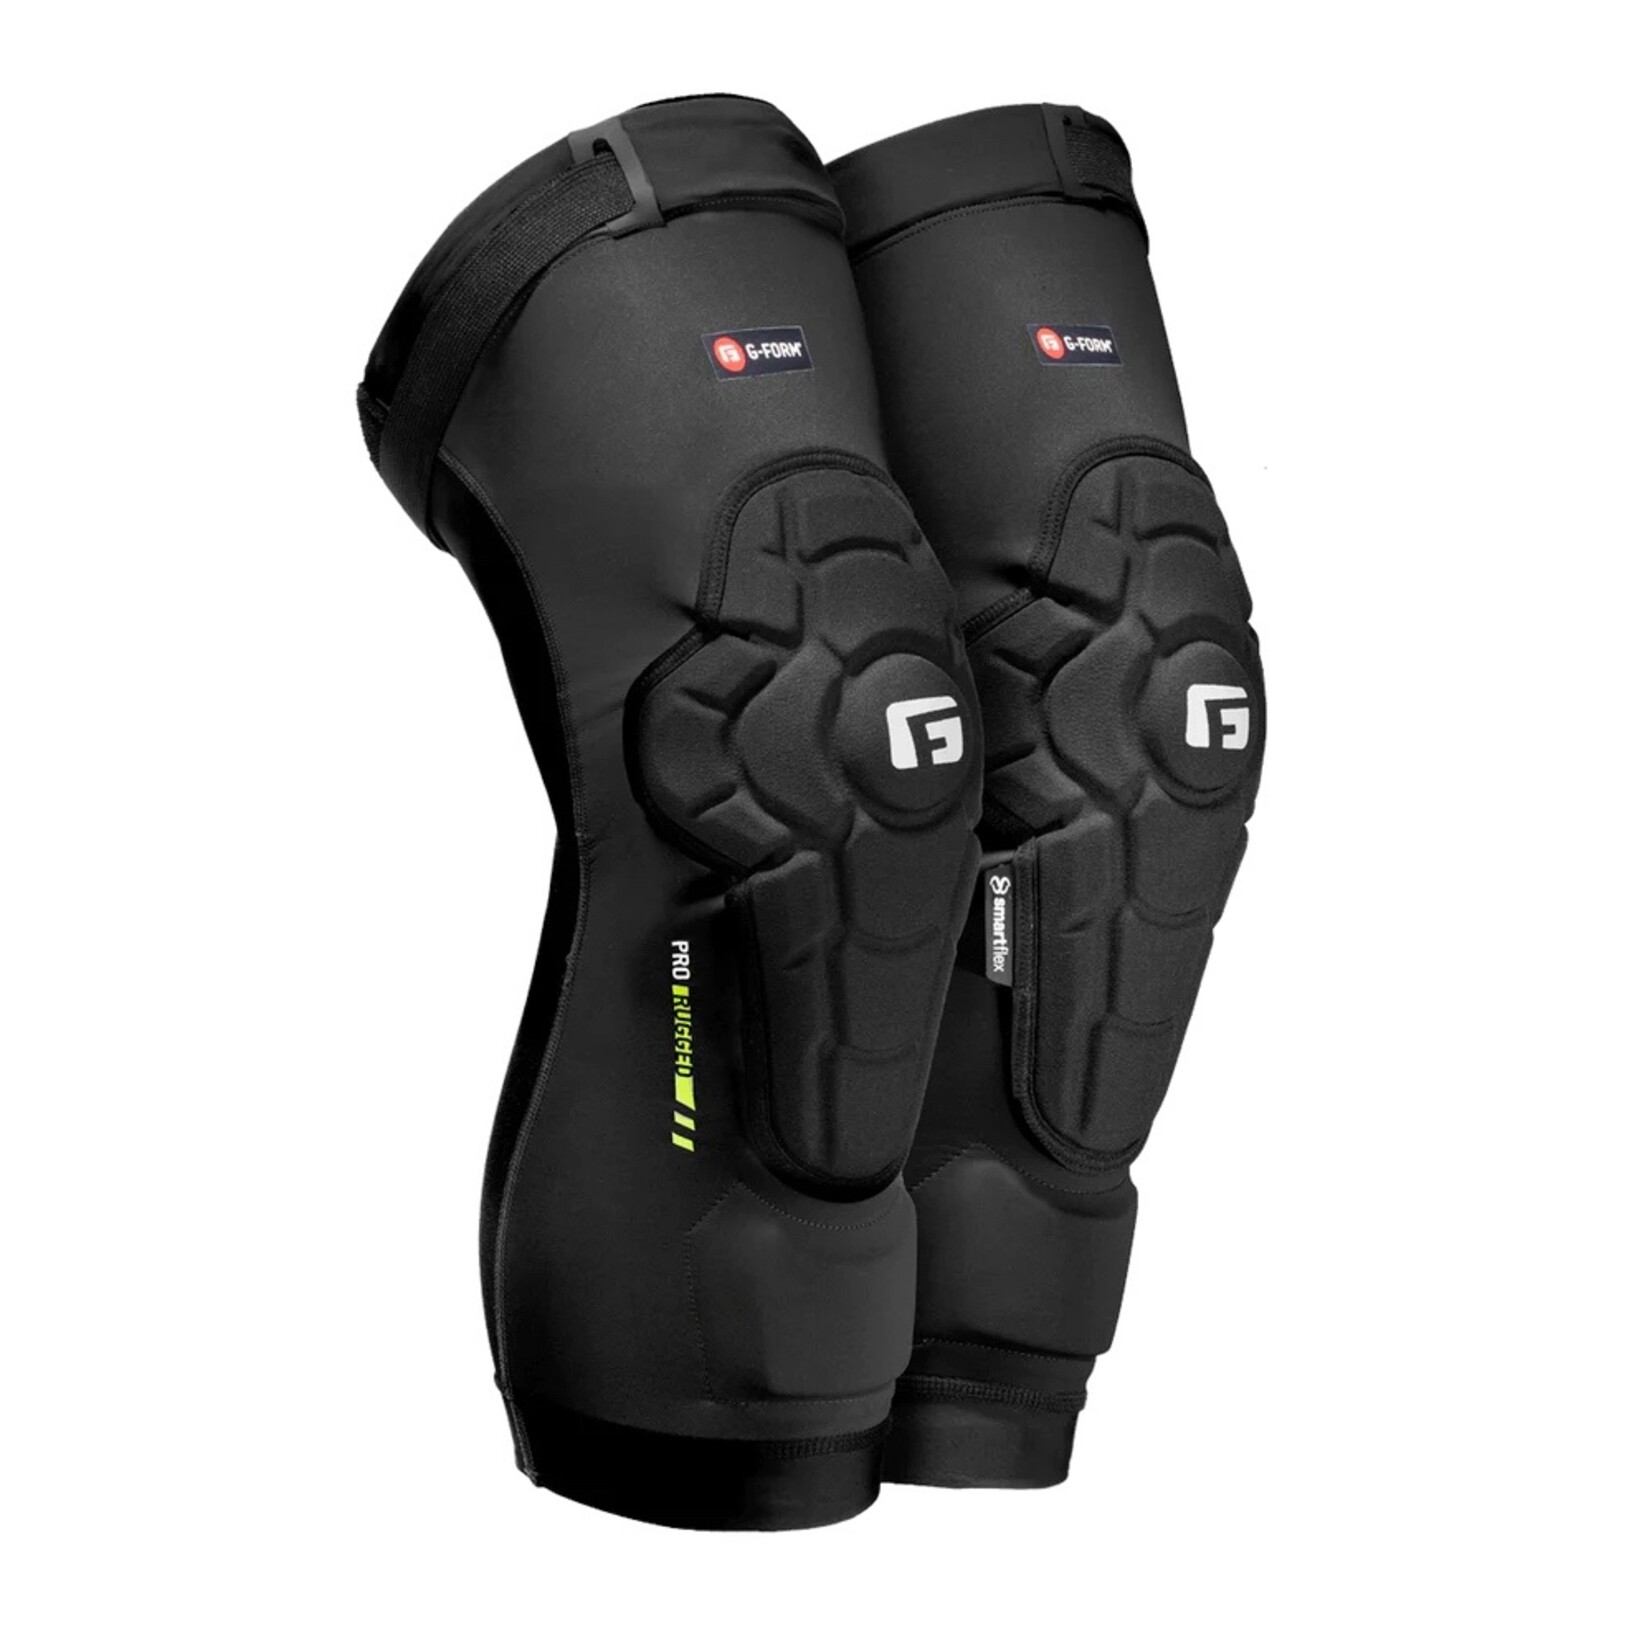 G-Form G-Form Pro Rugged 2 Knee Guard Black